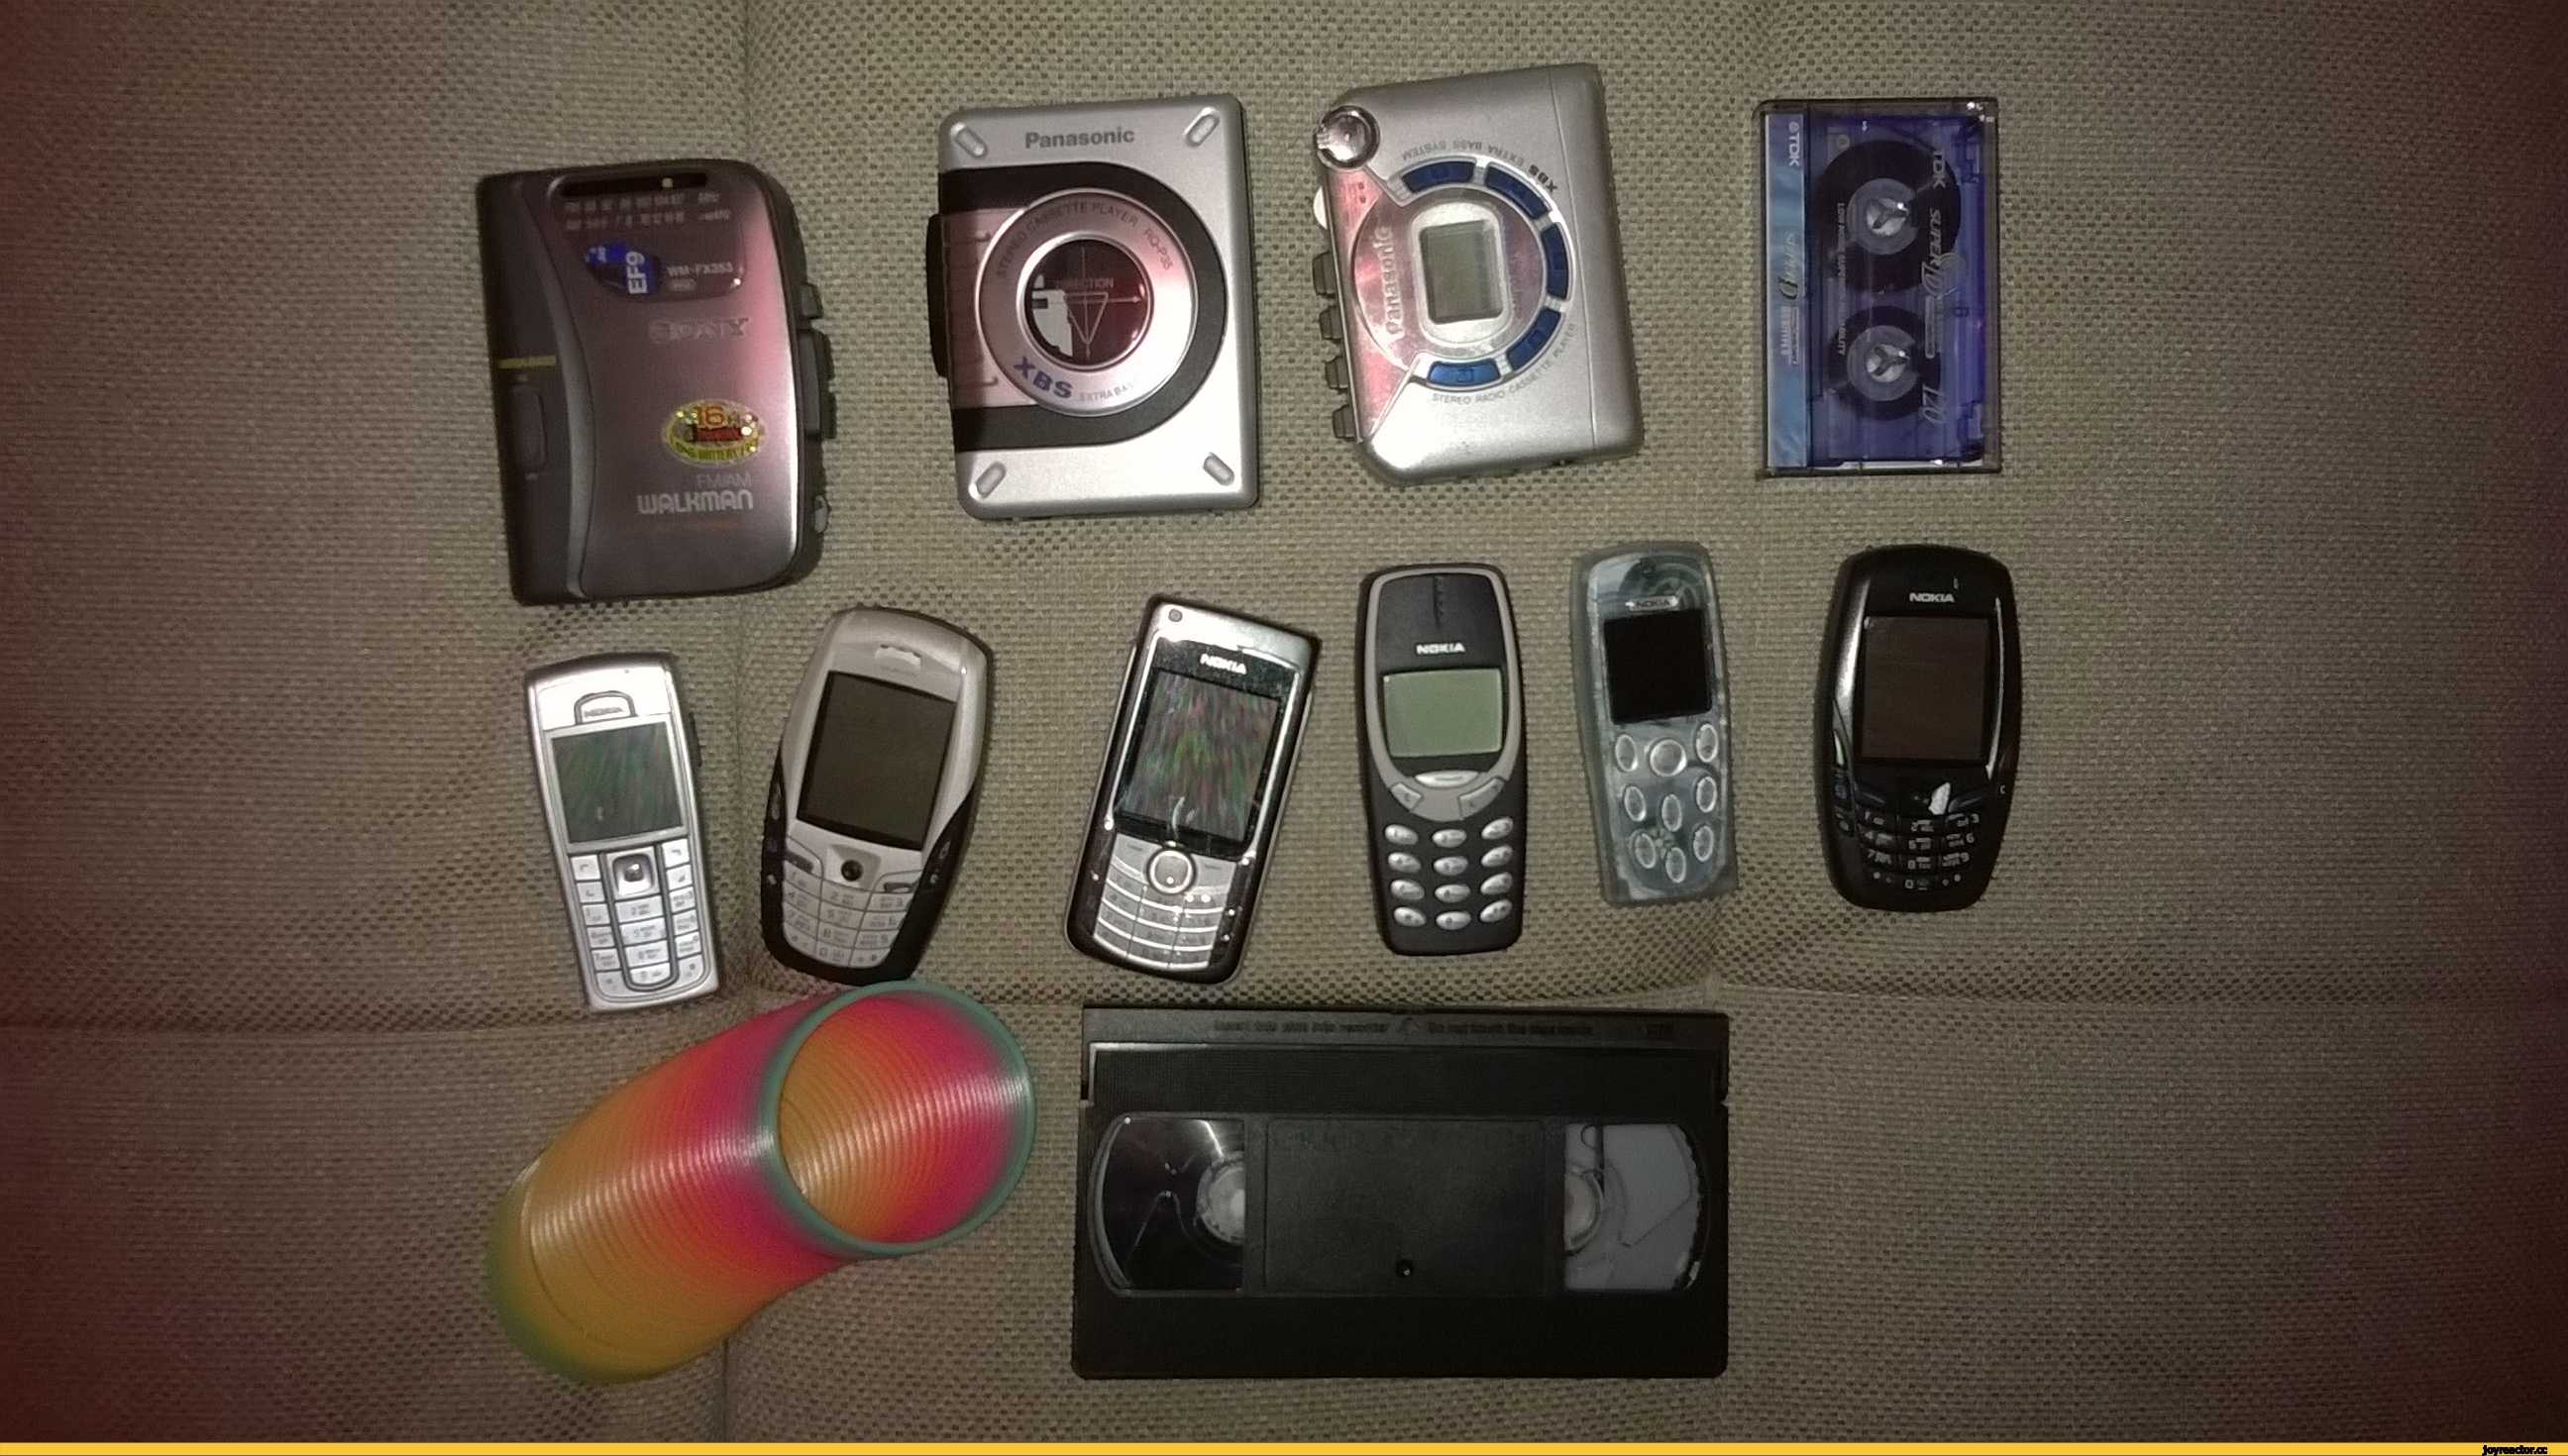 90 е товары. Nokia 2000-е. 90 Е ностальгия. Предметы из 90-х. Вещи 90-х годов.